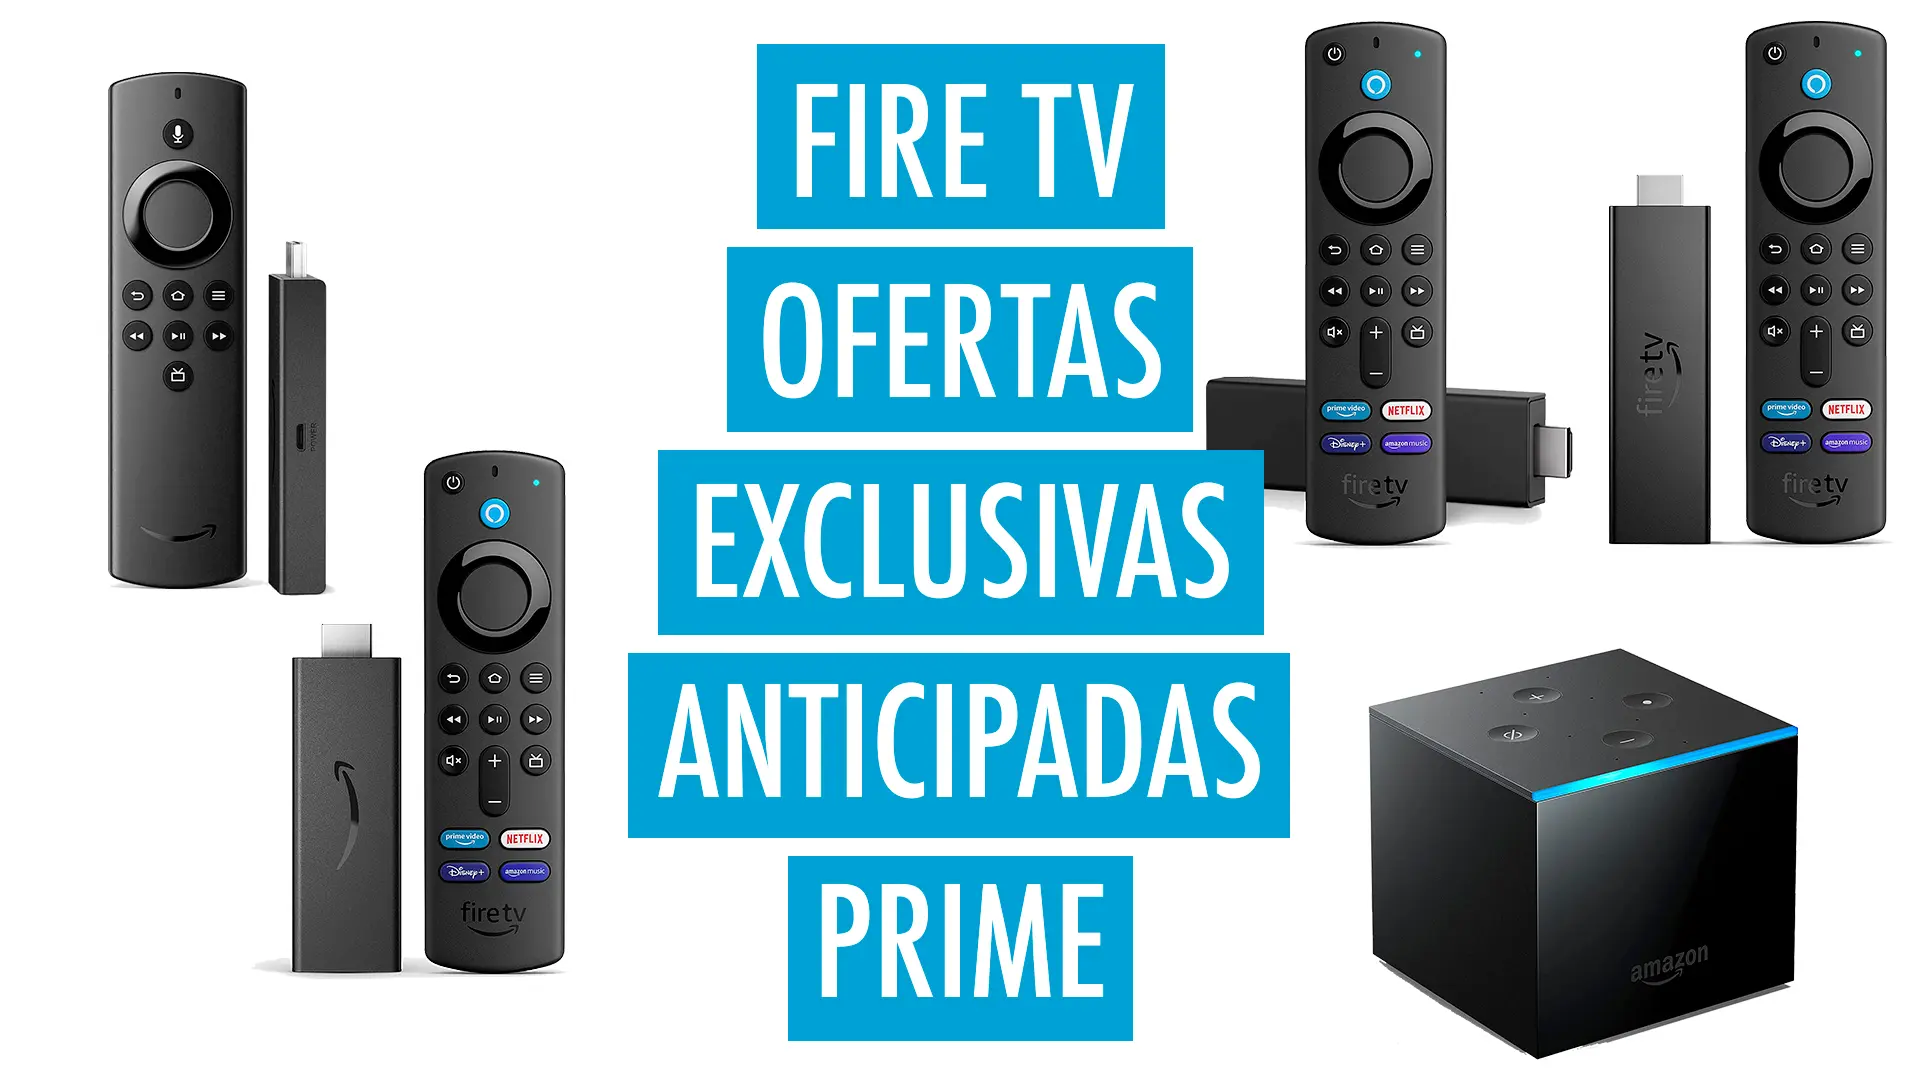 Los Fire TV Stick en campaña anticipada de ofertas Prime